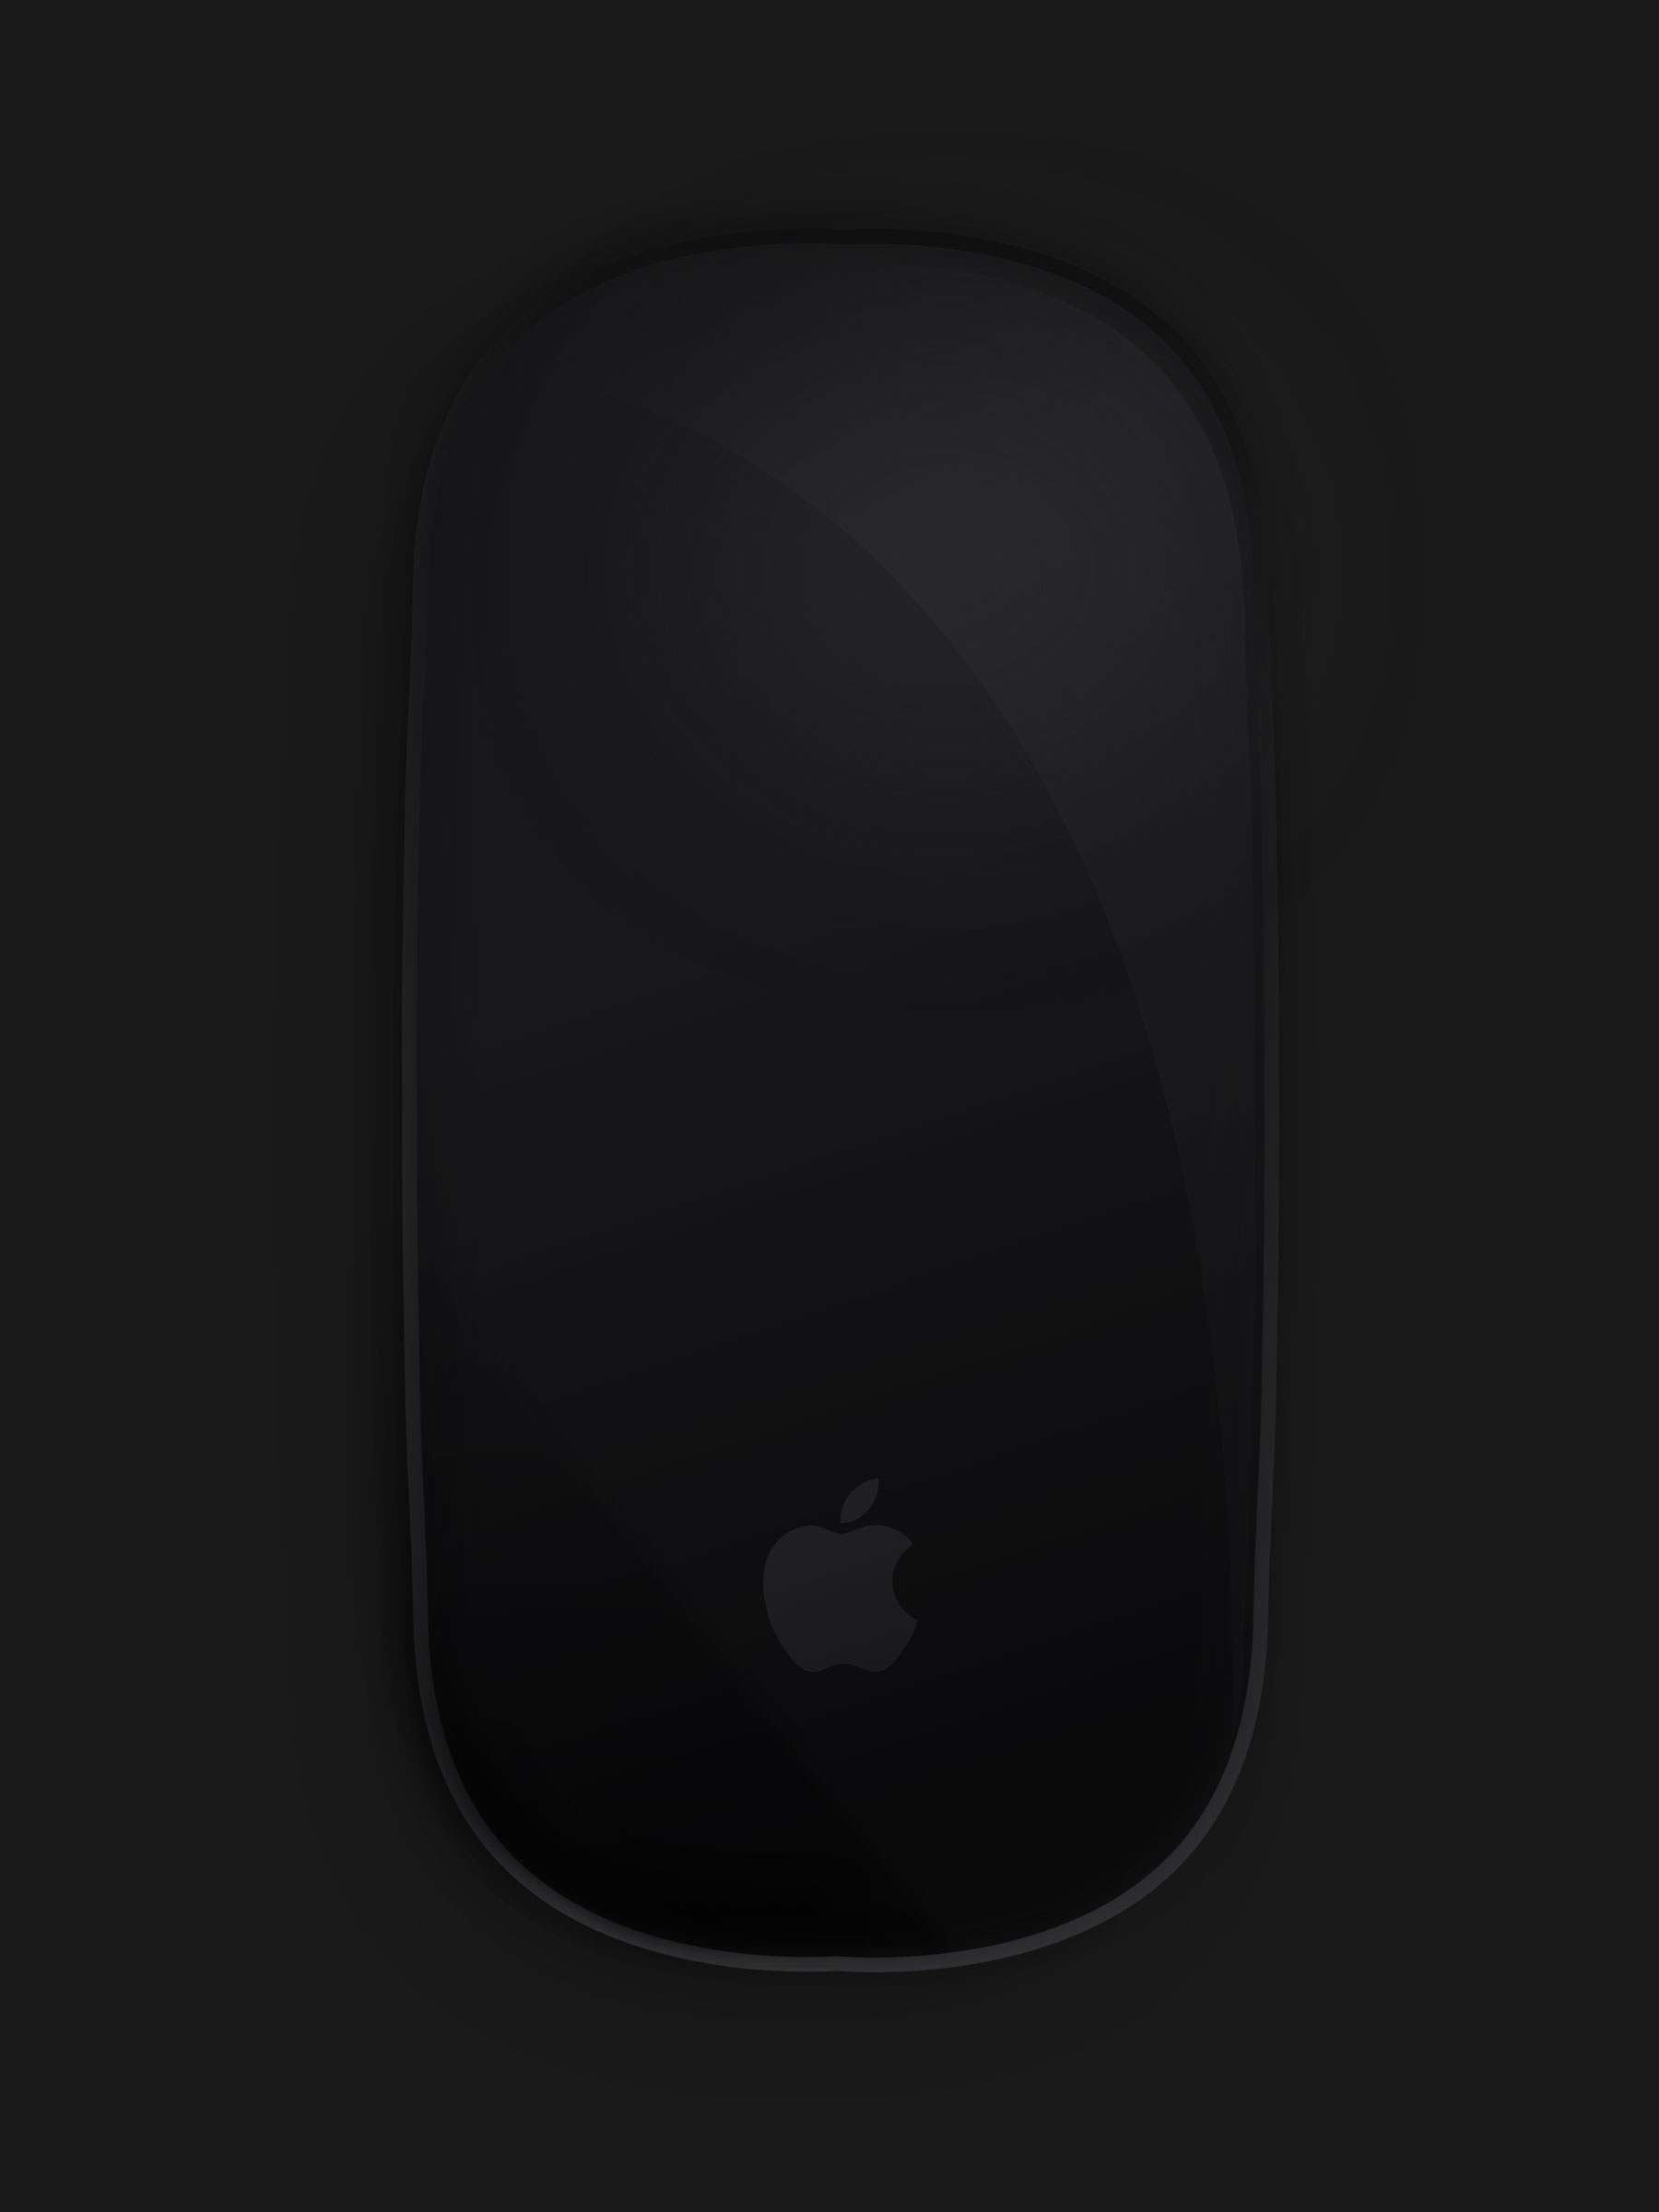 Magic Mouse 2 黑色顶视图模型1